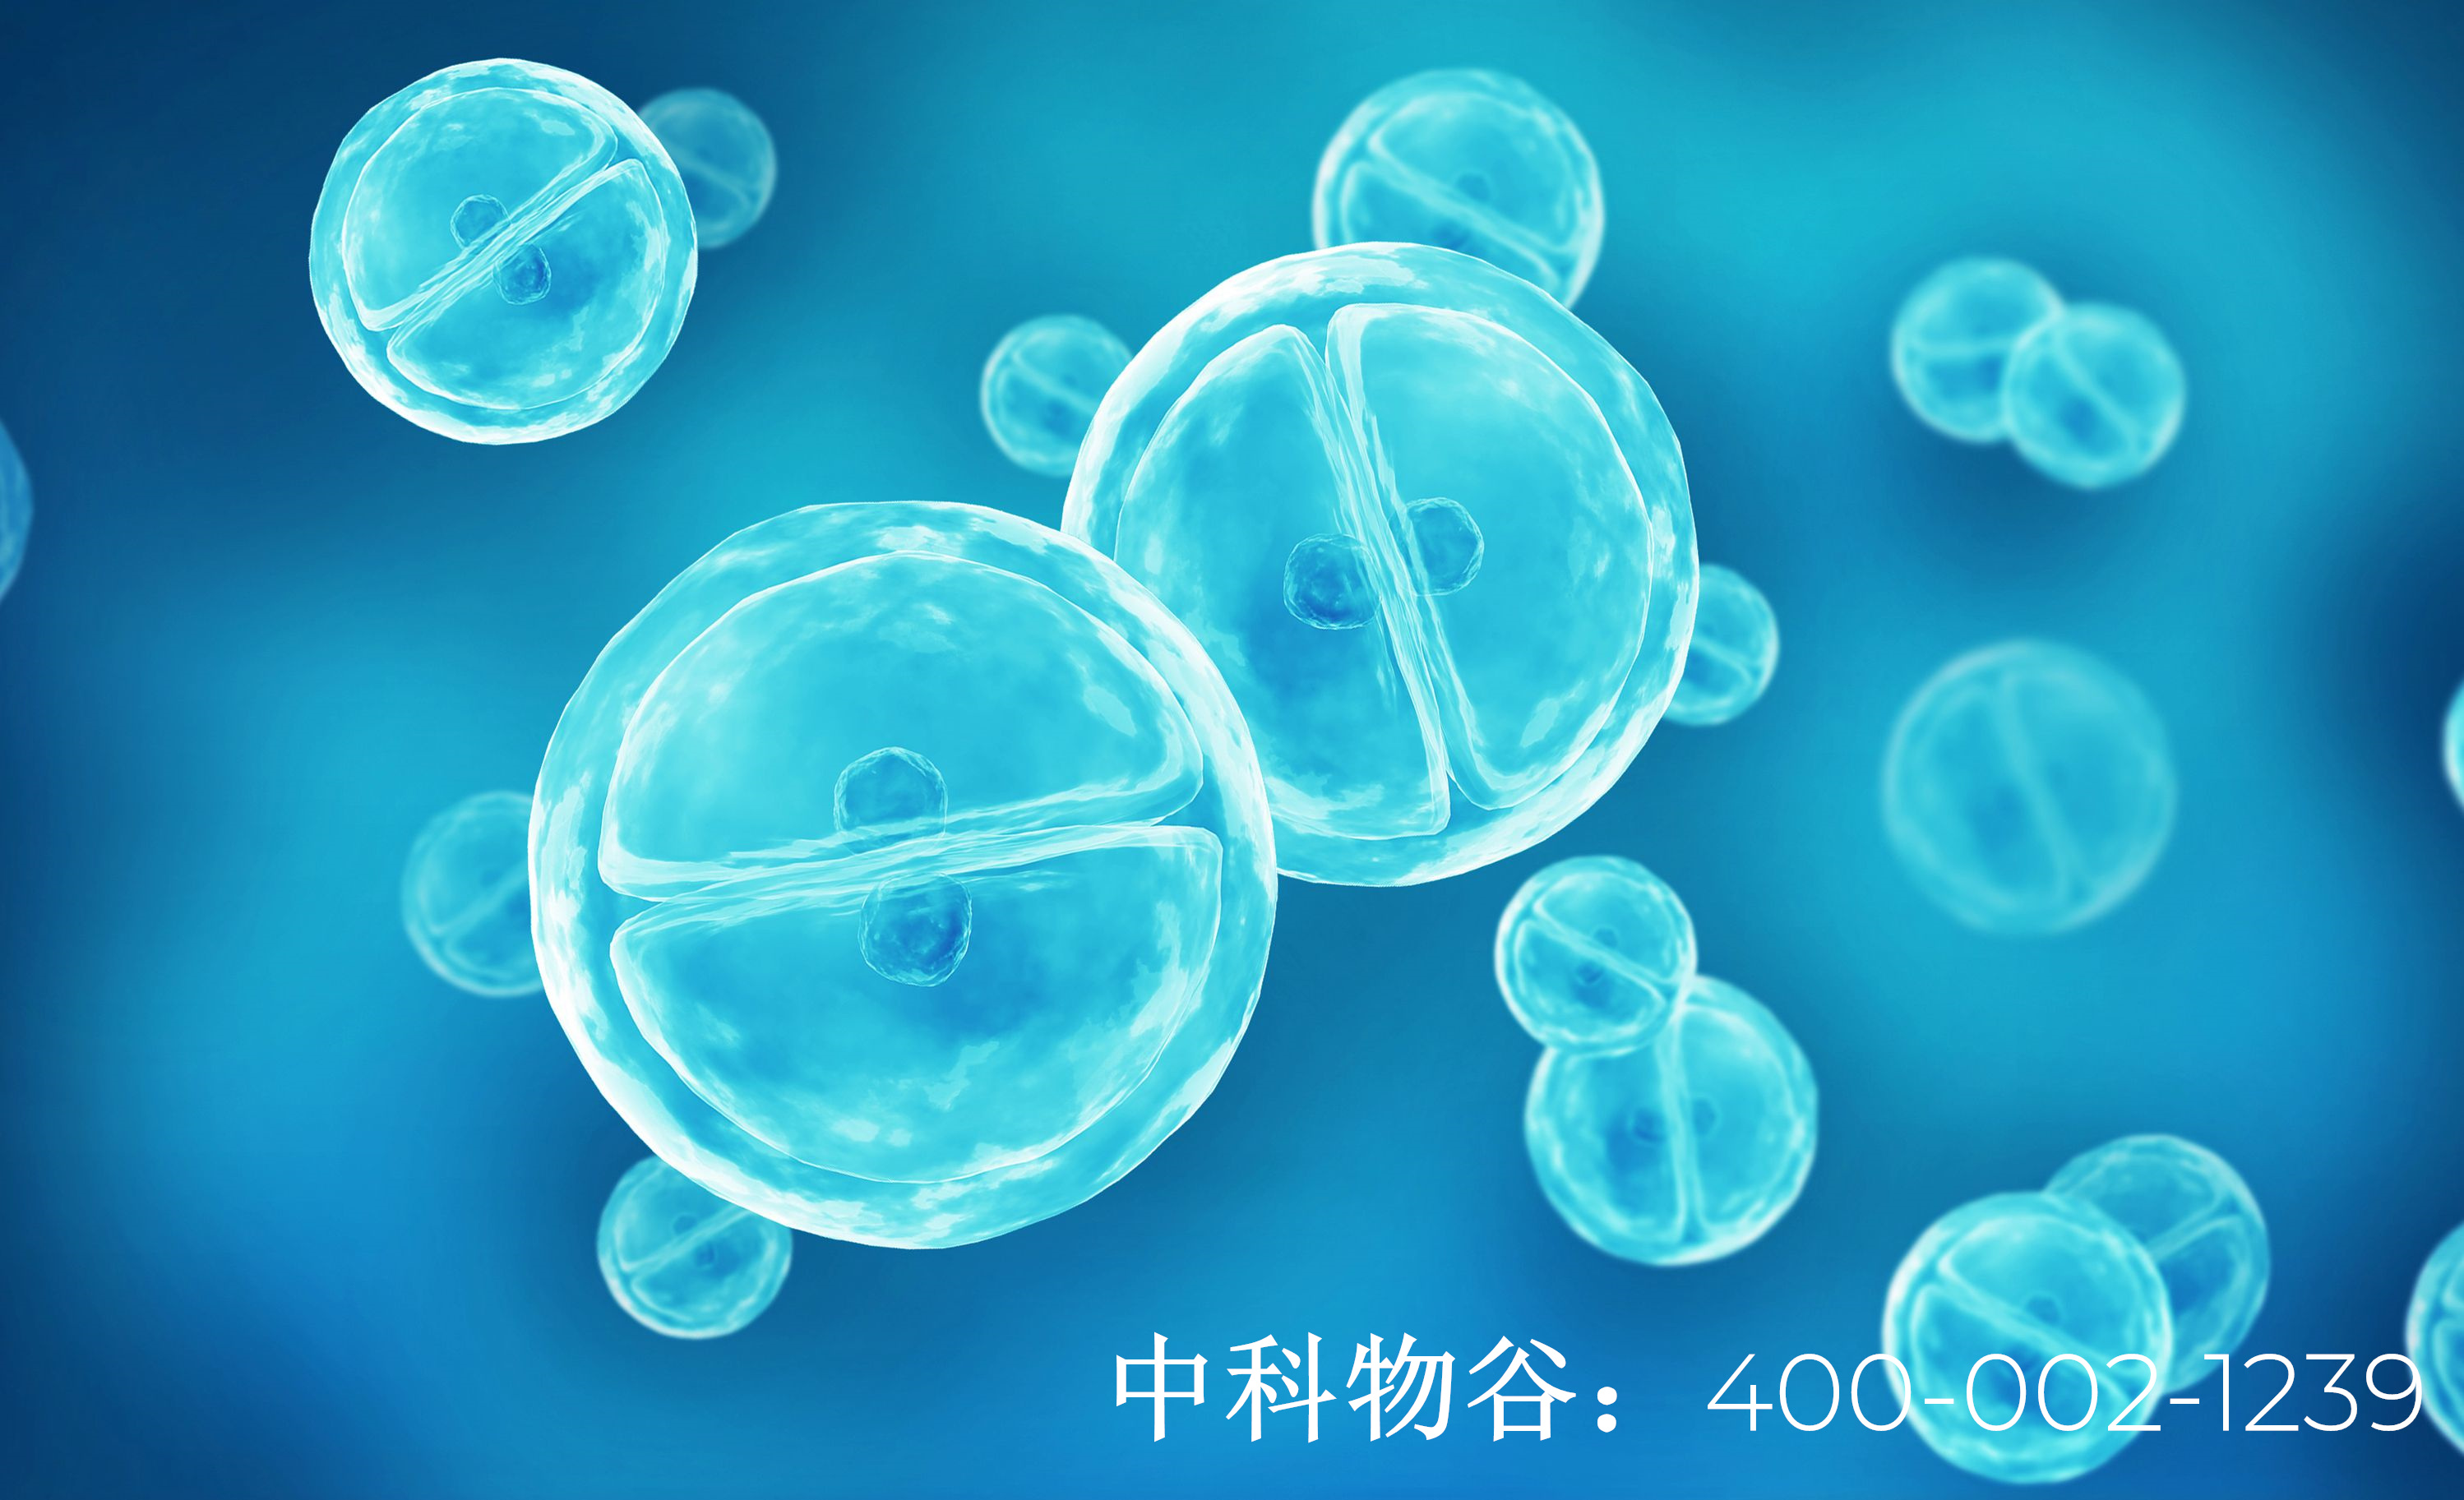 想要通过干细胞来美容，想了解一下中国批准的干细胞美容品牌